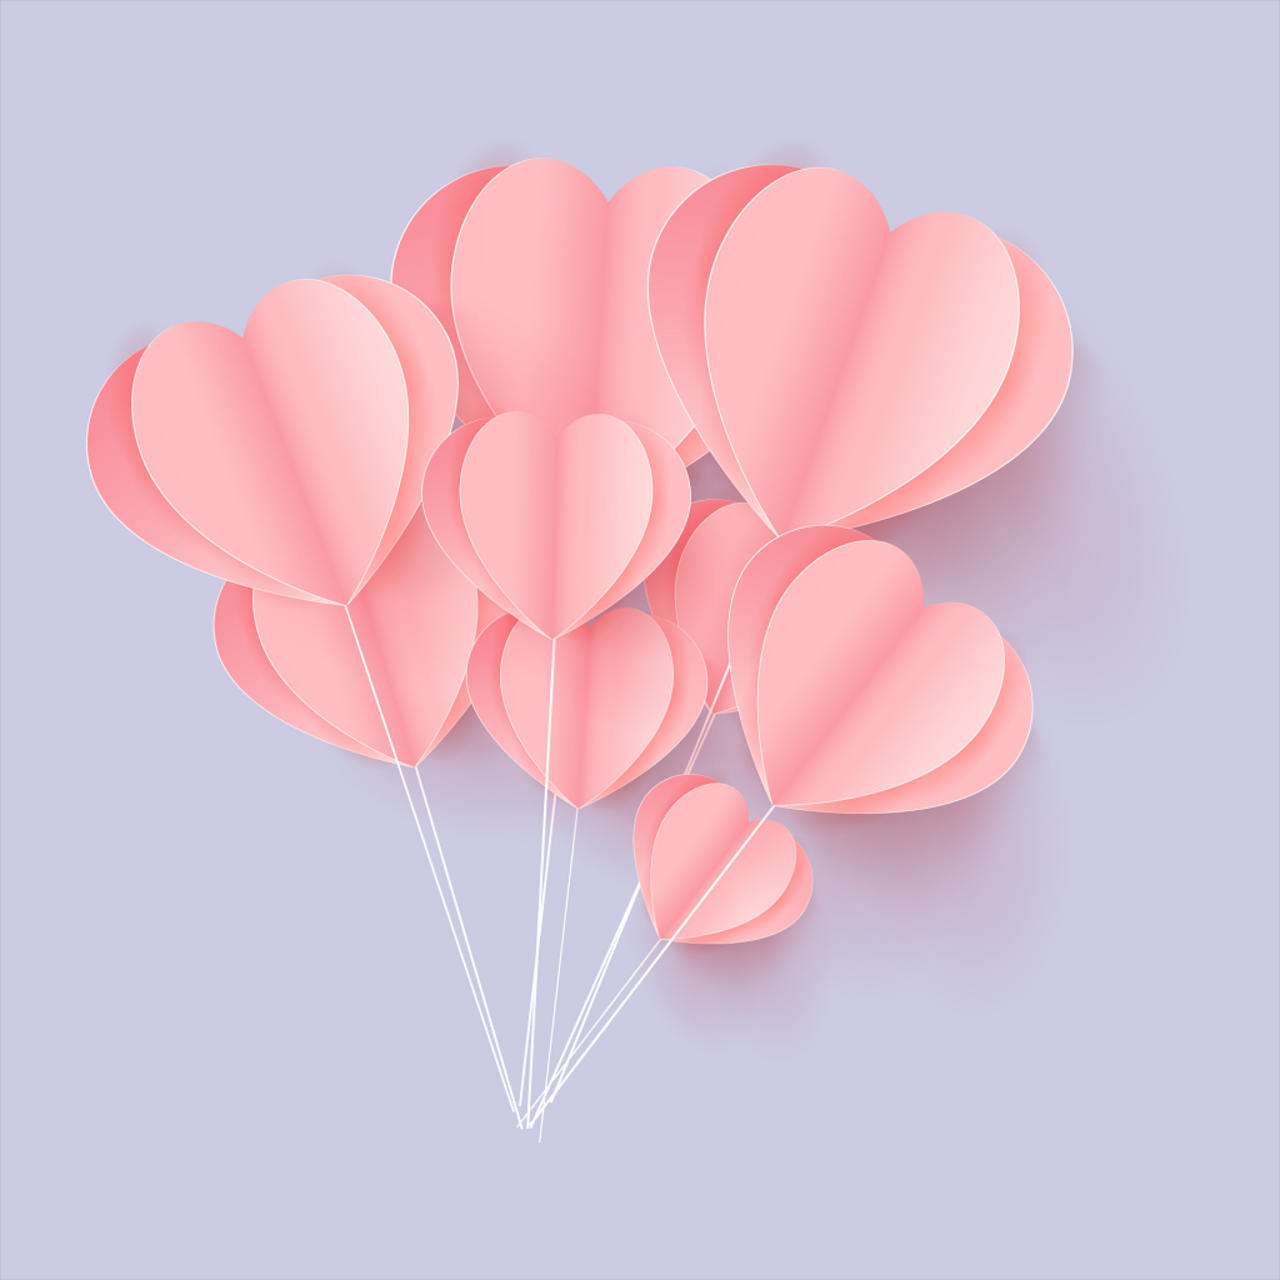 立体爱心折纸气球矢量素材